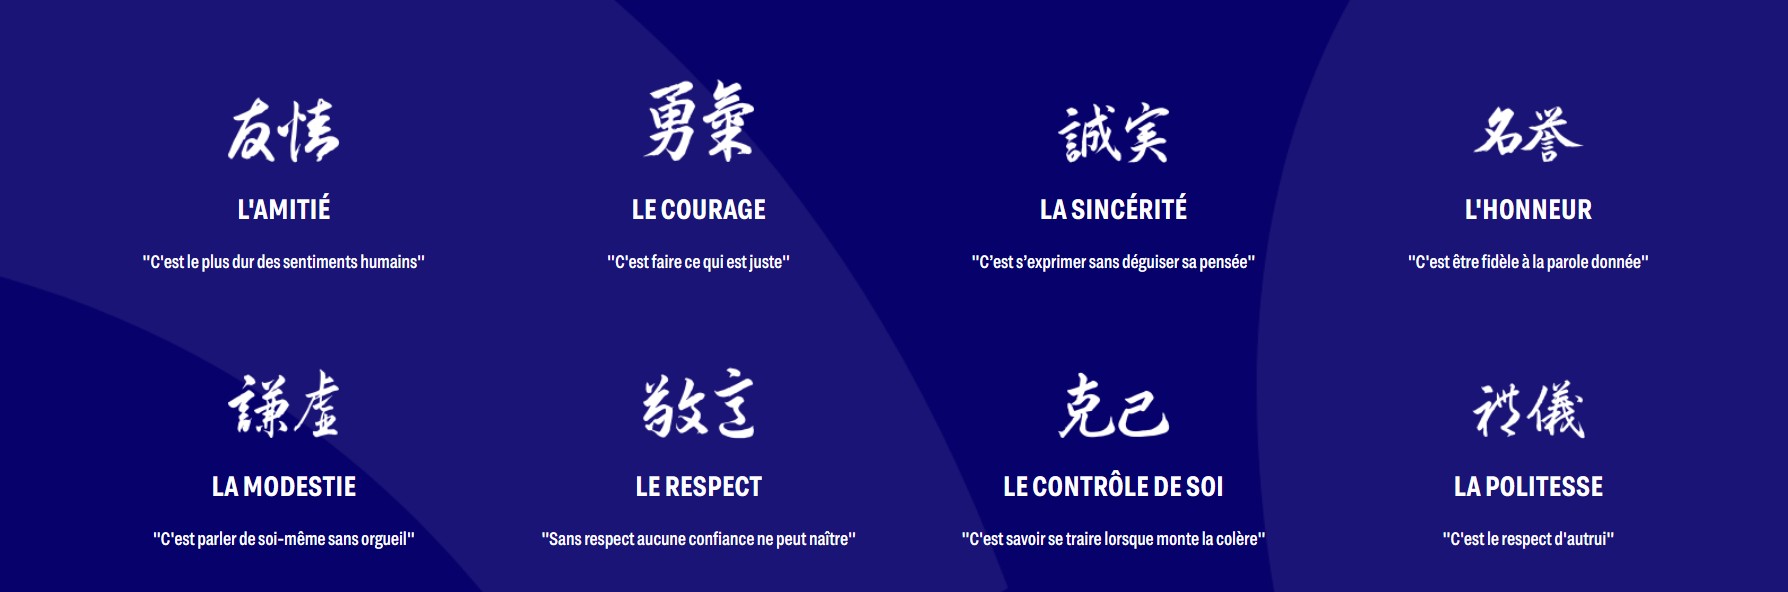 프랑스 유도 연맹 홈페이지엔 유도의 8가지 ‘모럴 코드’를 강조하고 있다.